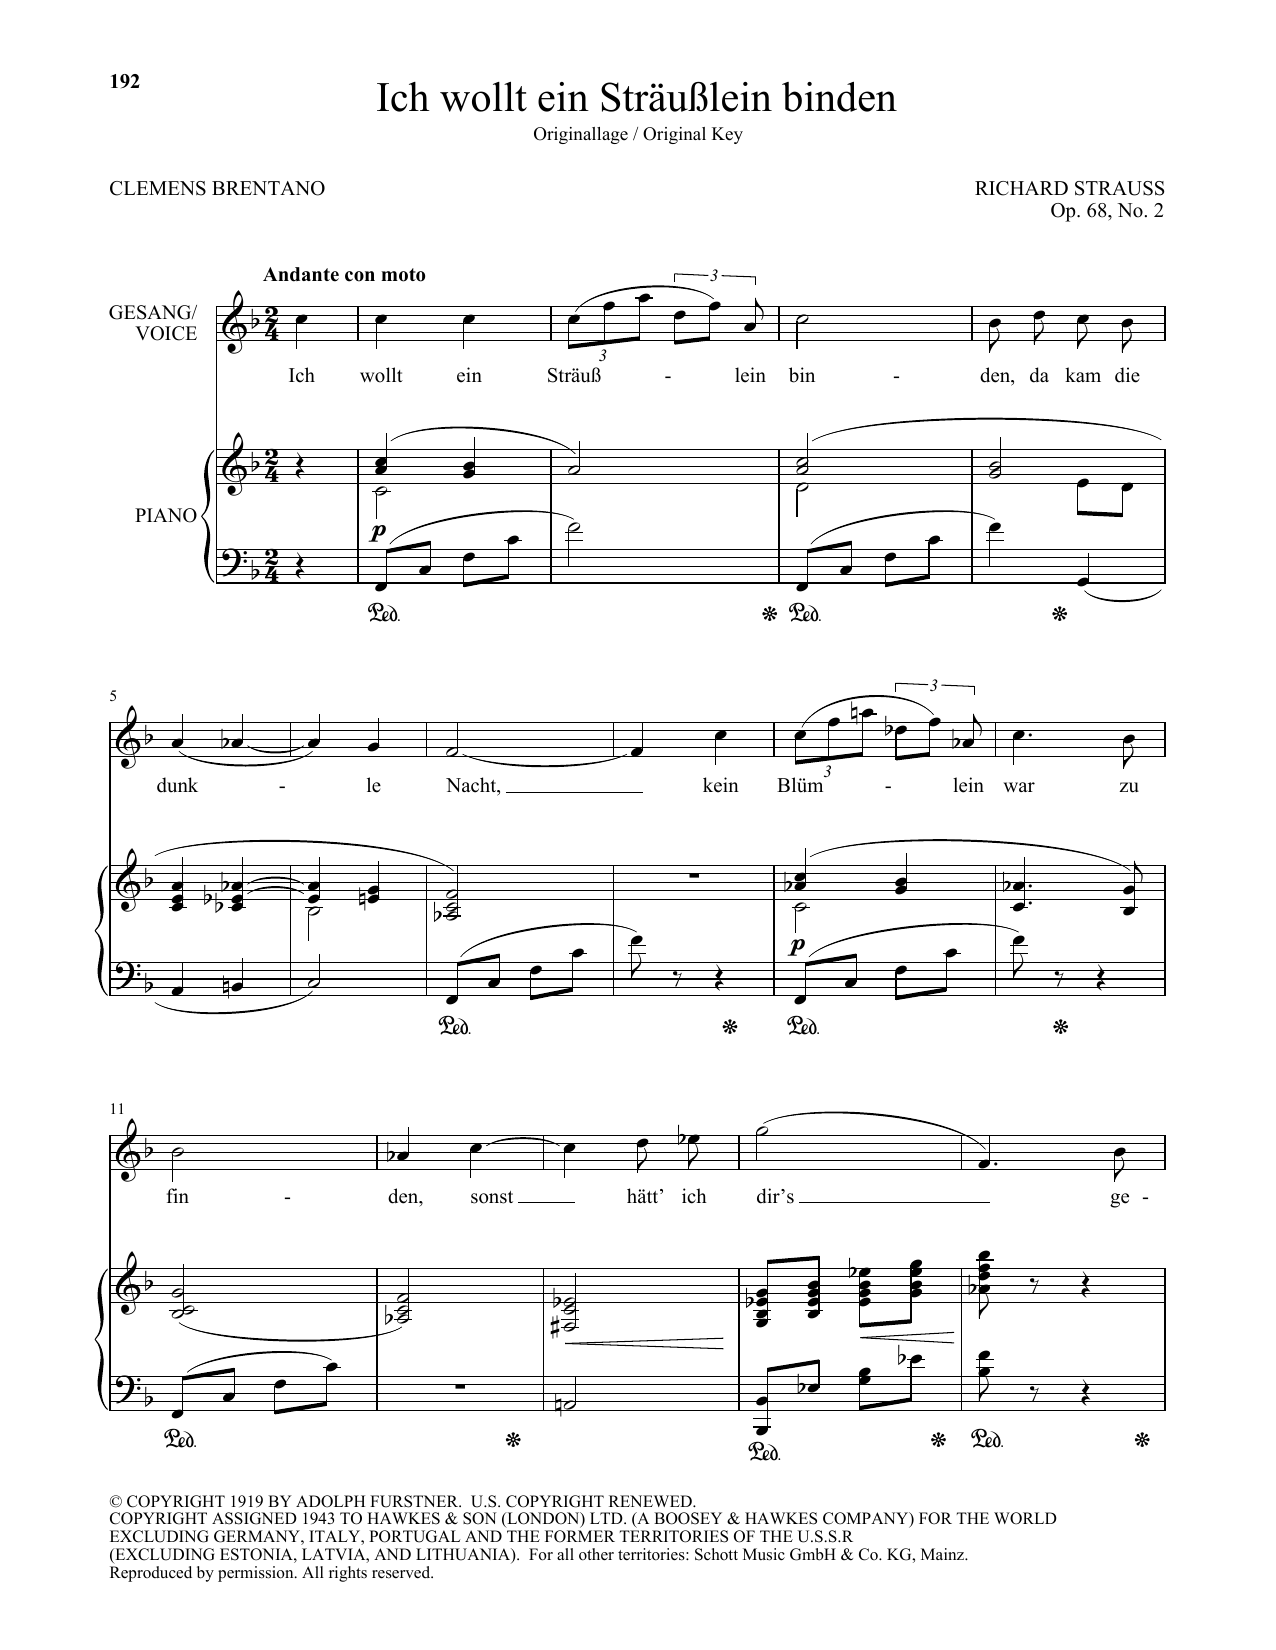 Richard Strauss Ich Wollt Ein Strausslein Binden (High Voice) Sheet Music Notes & Chords for Piano & Vocal - Download or Print PDF